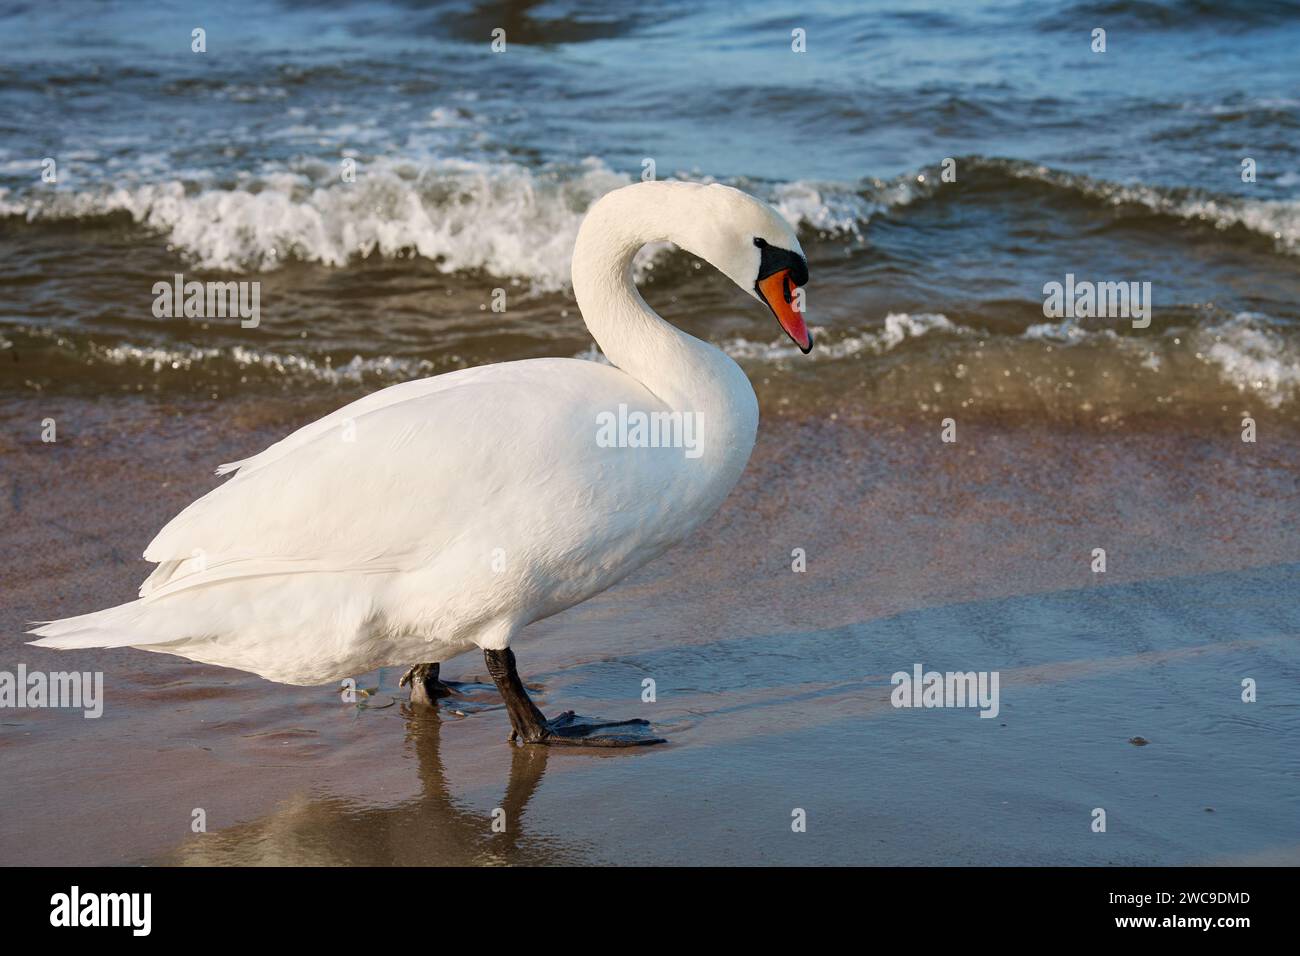 Cygne blanc sur les rives de la mer Baltique en Pologne. Cygne sauvage dans la nature Banque D'Images